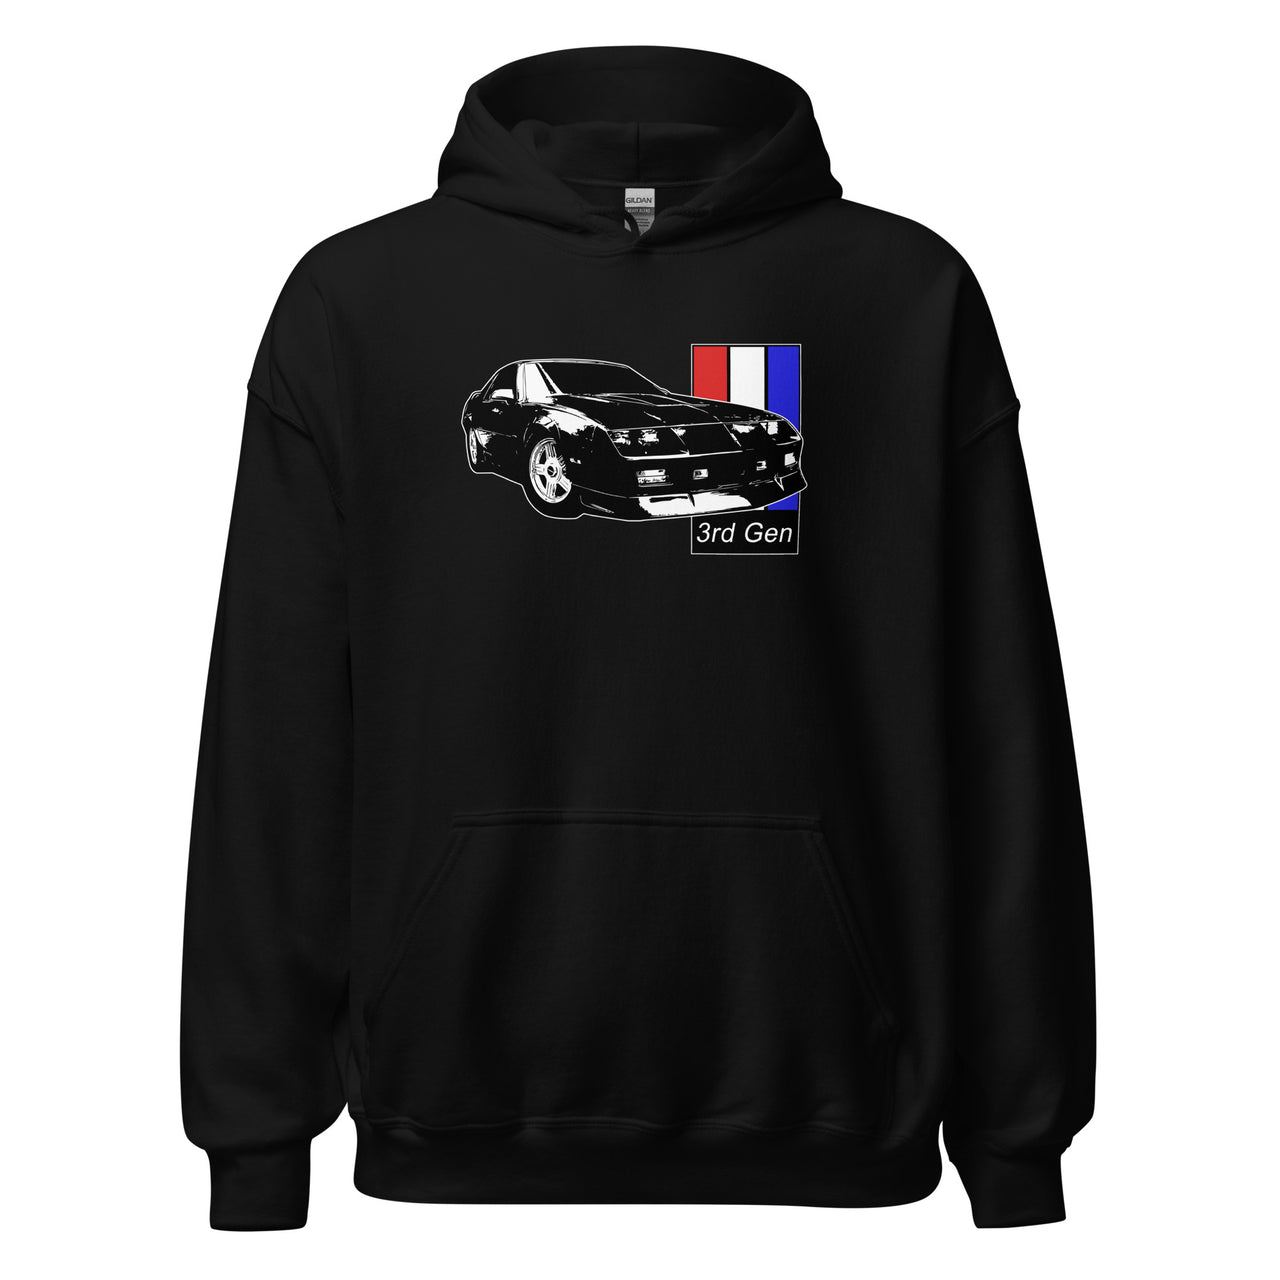 3rd Gen Camaro Hoodie Sweatshirt in black